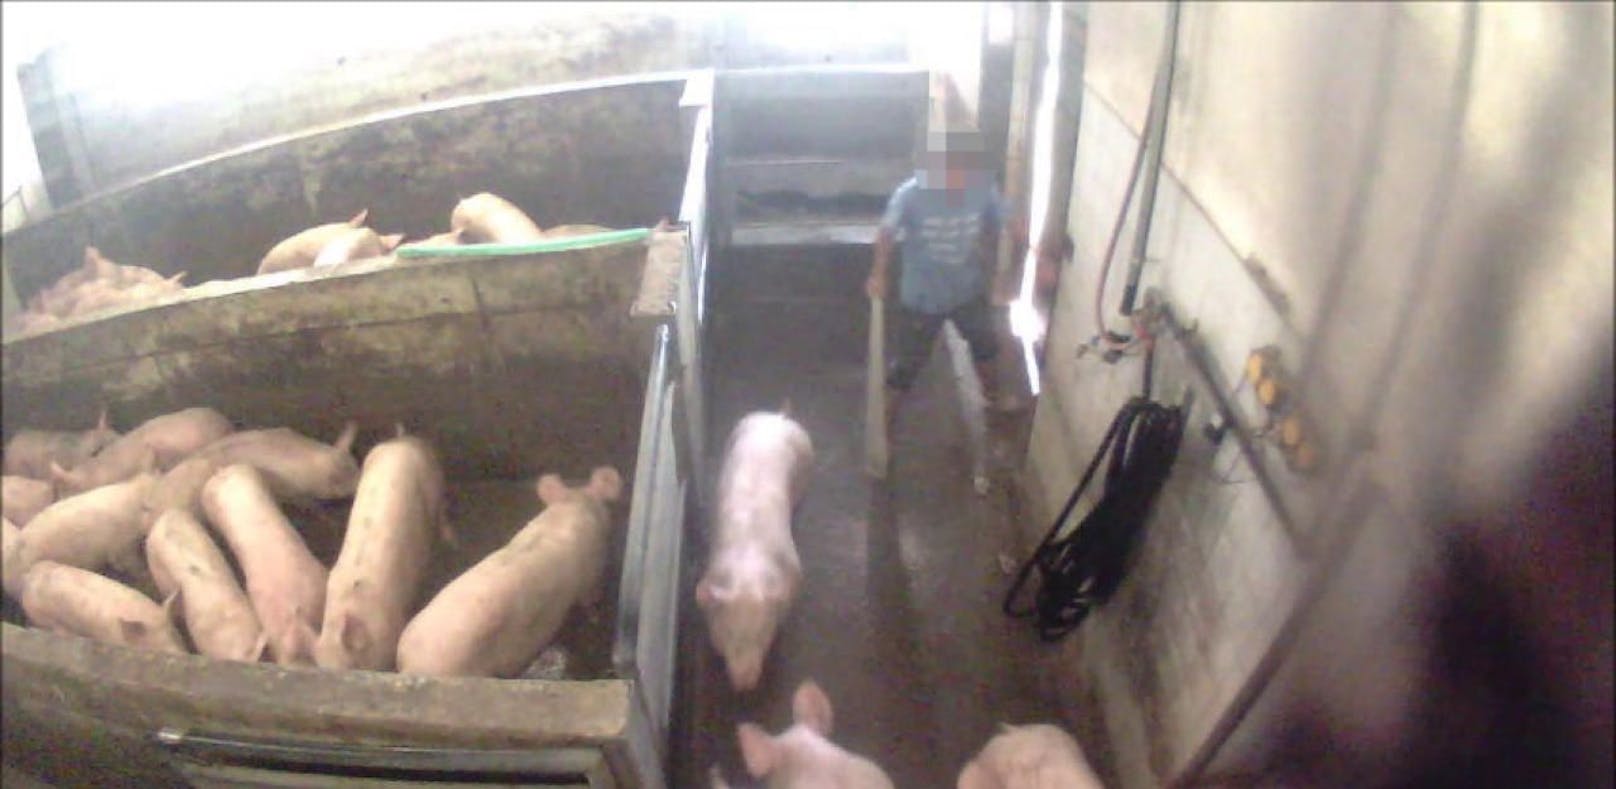 Der Verein gegen Tierfabriken prangert seit vier Jahren die Zustände im betroffenen Schlachthof an.